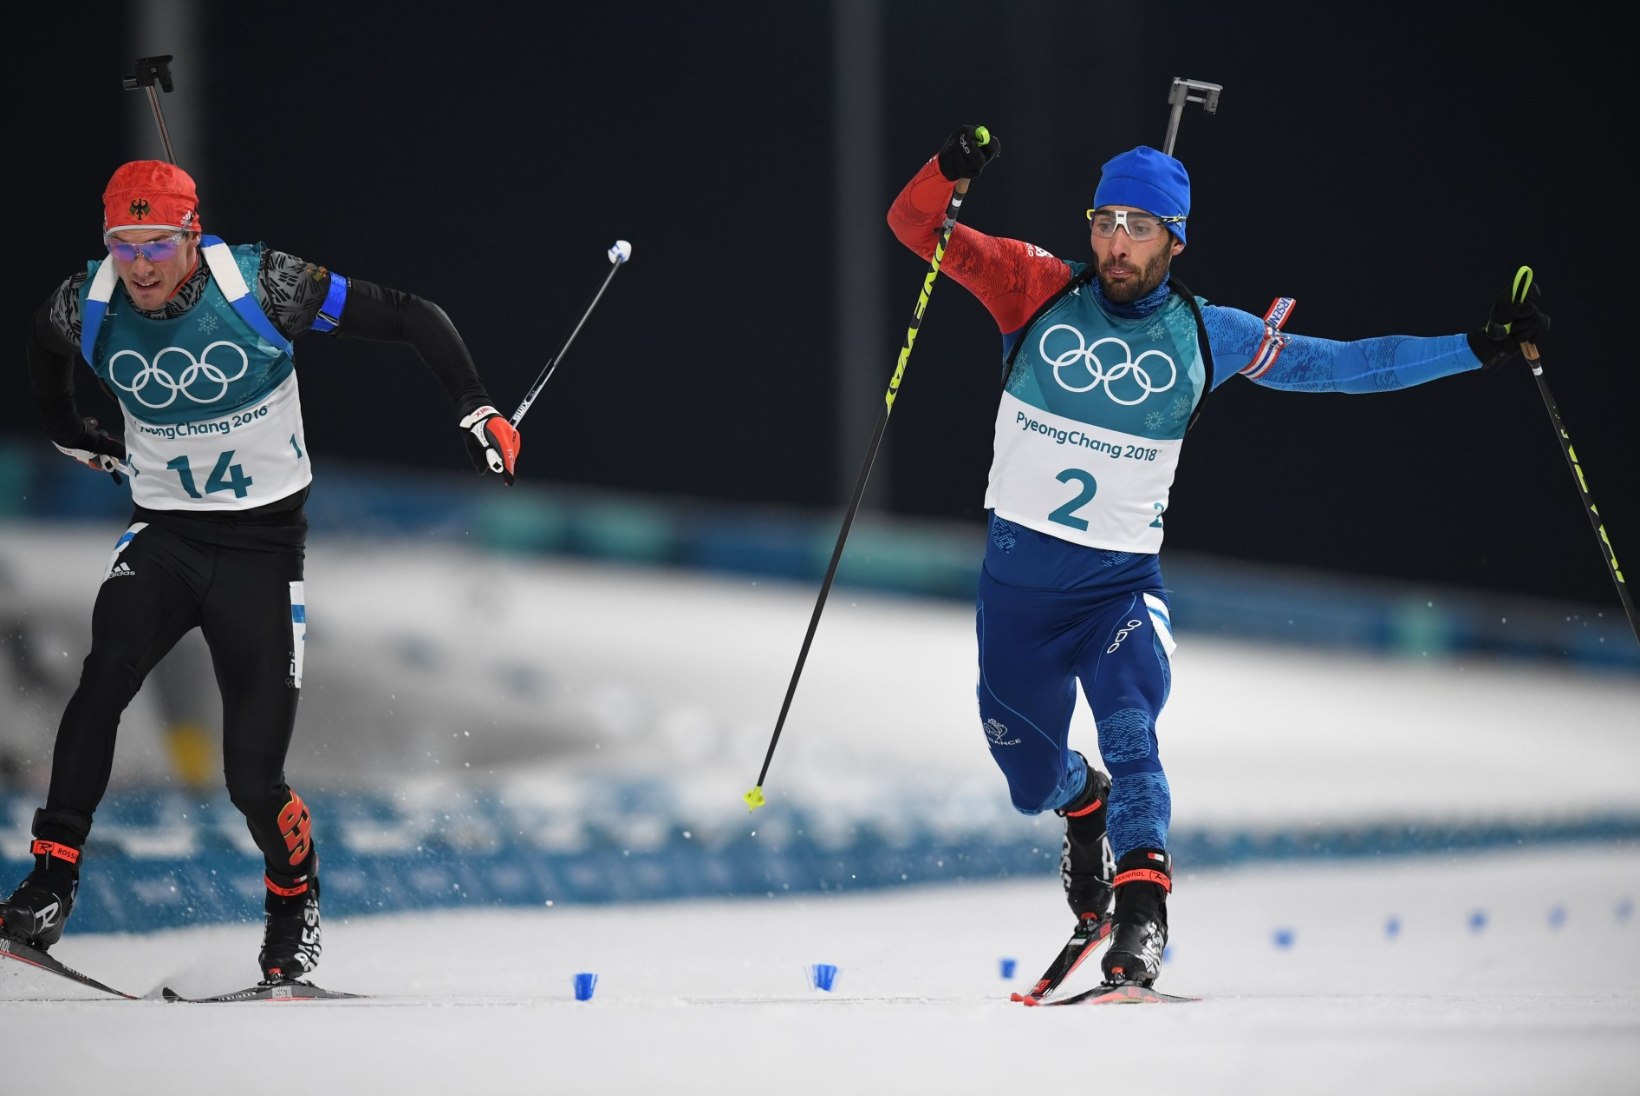 MILLINE FINIŠ! Martin Fourcade võitis Pyeongchangis teise kuldmedali paari sentimeetriga